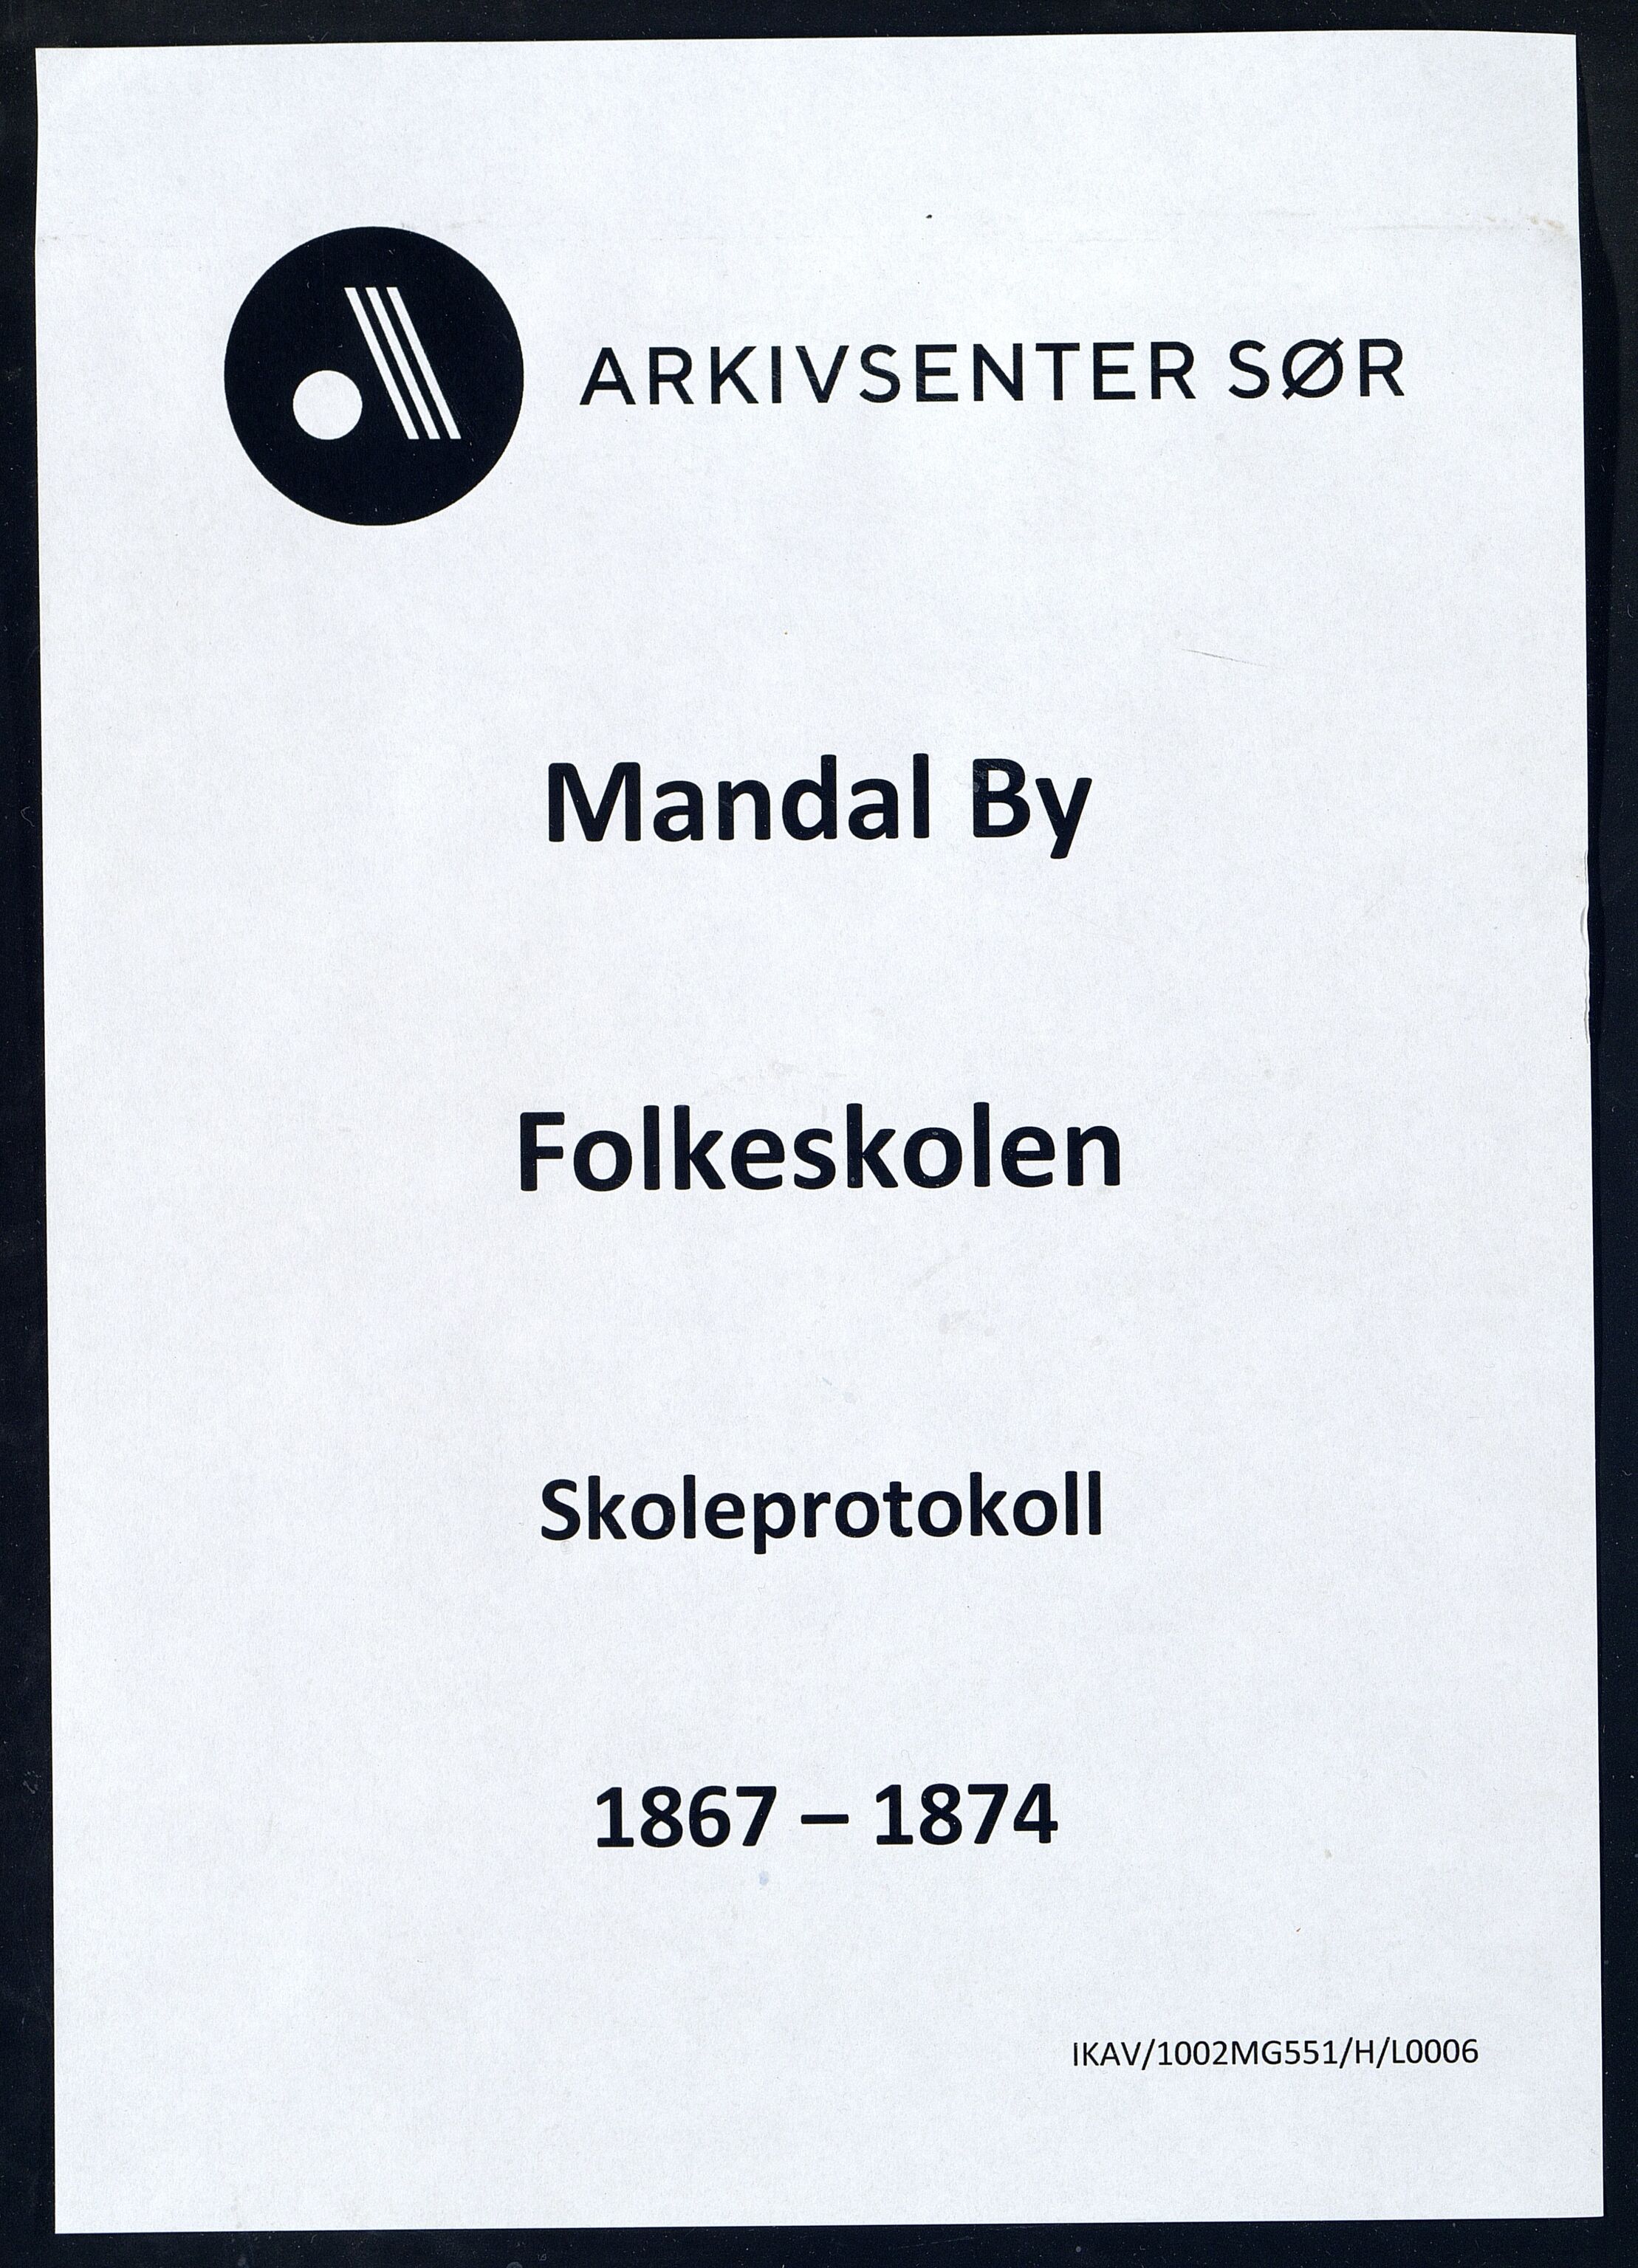 Mandal By - Mandal Allmueskole/Folkeskole/Skole, IKAV/1002MG551/H/L0006: Skoleprotokoll, 1867-1874